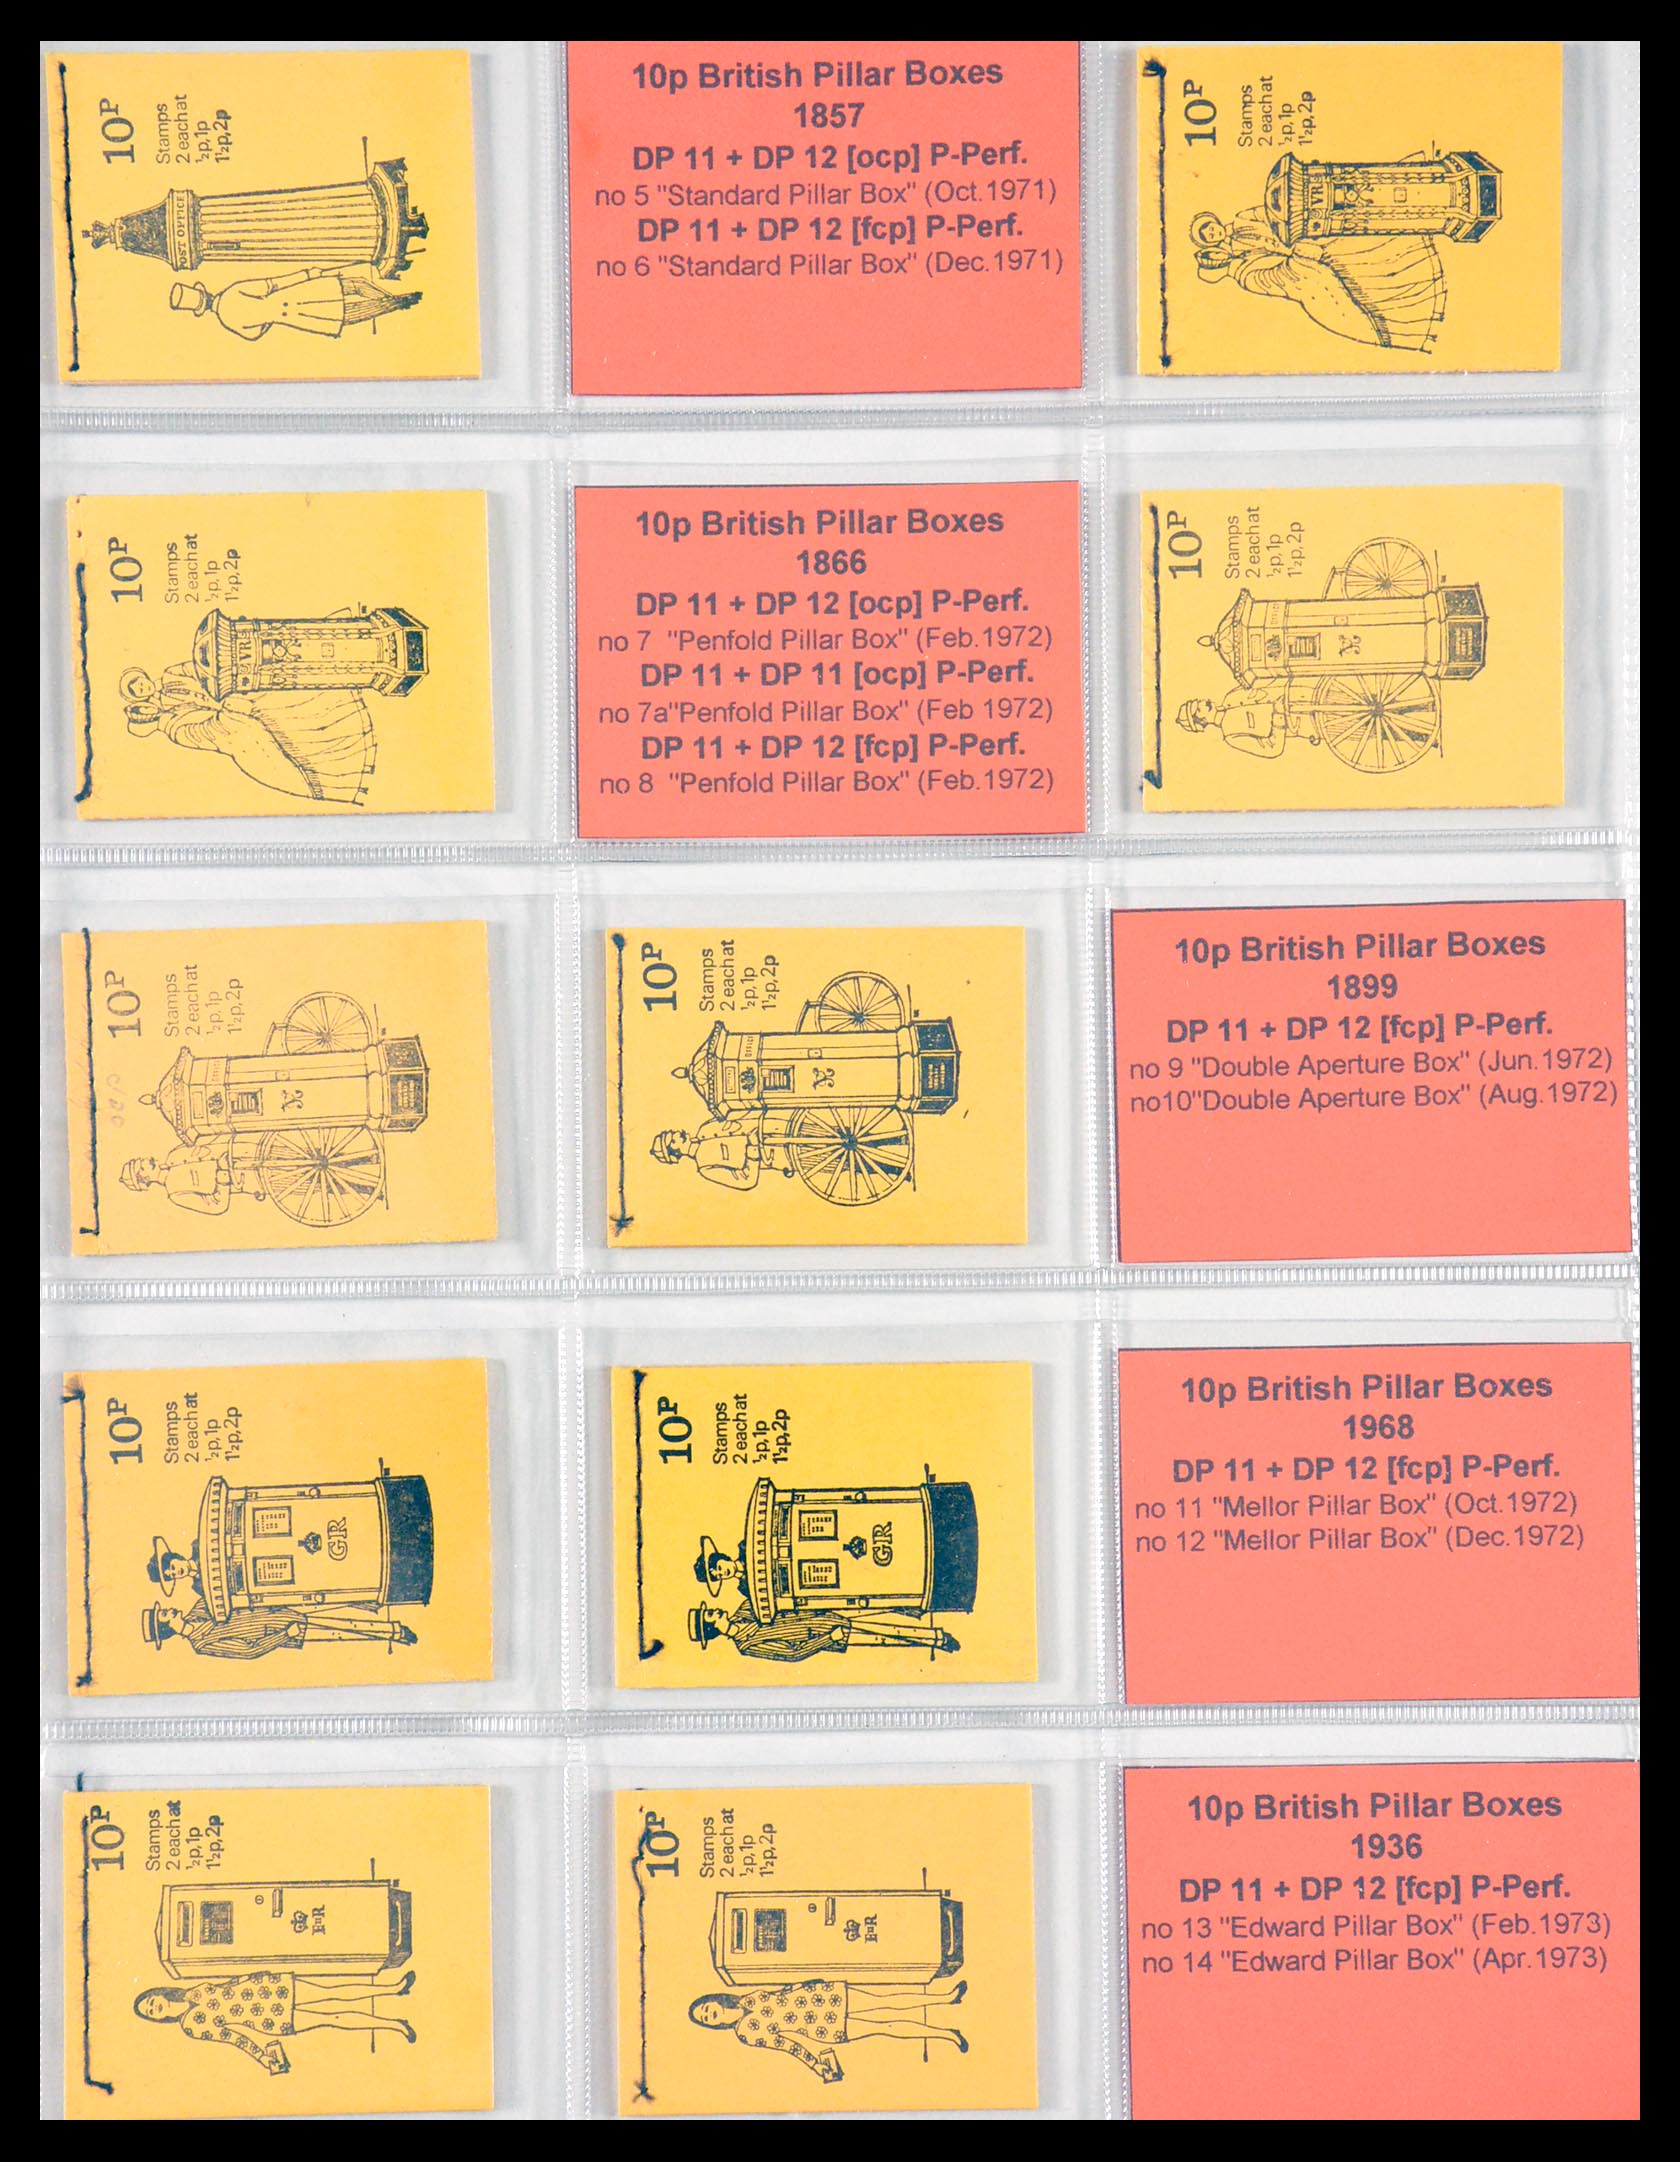 29755 023 - 29755 Engeland postzegelboekjes 1968-1977.